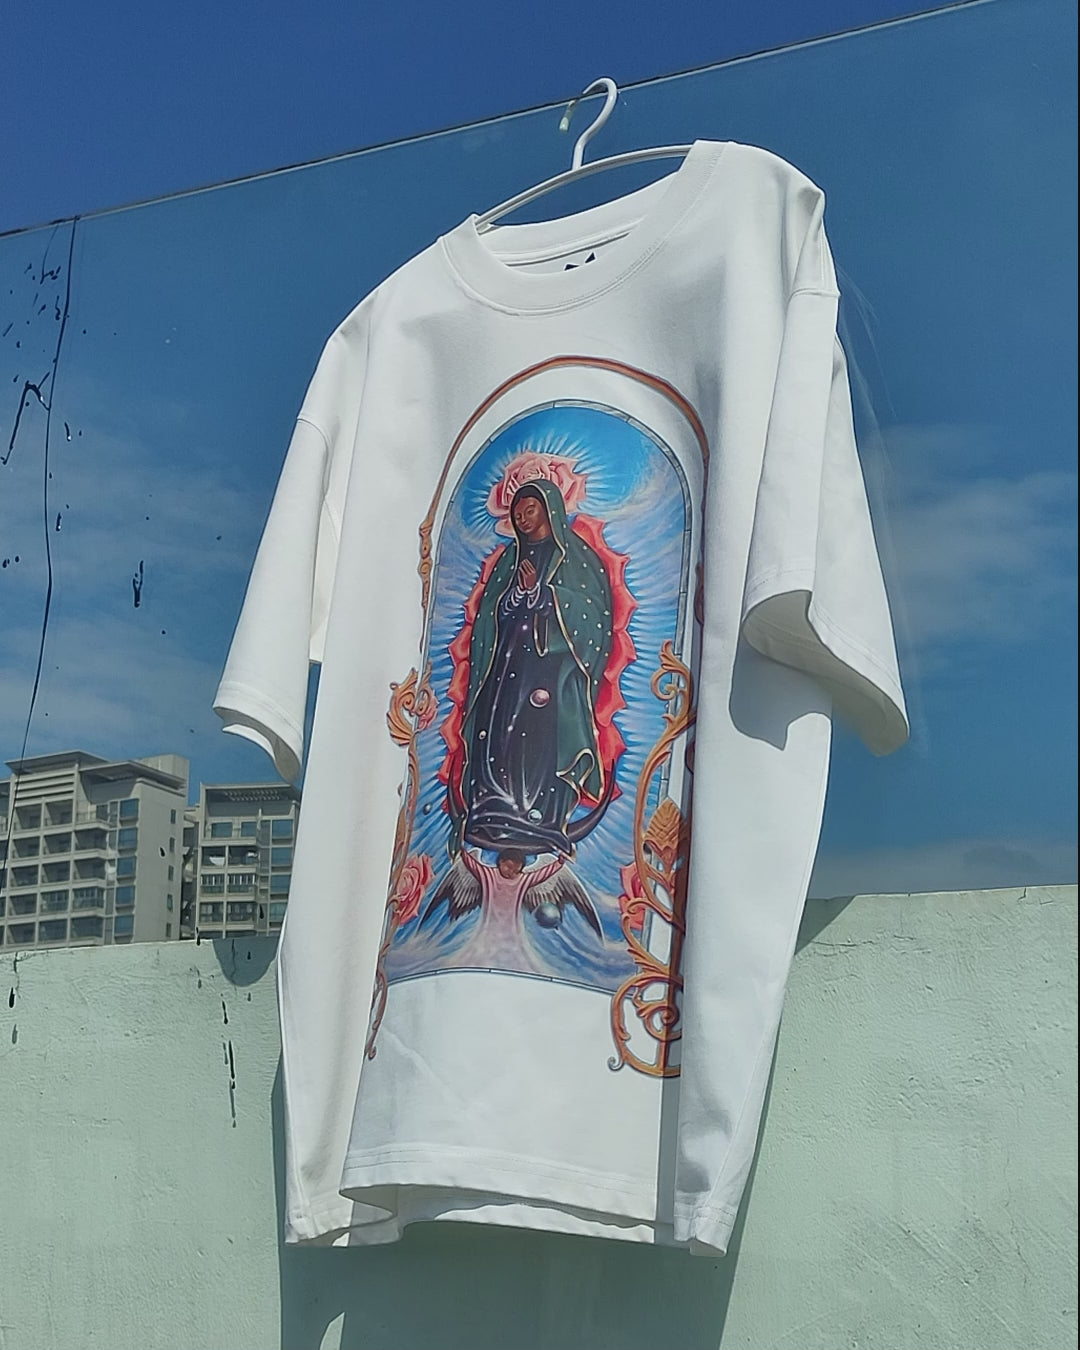 障害物と危険©グアダルーペの聖母ウェーブ ホワイト T シャツ